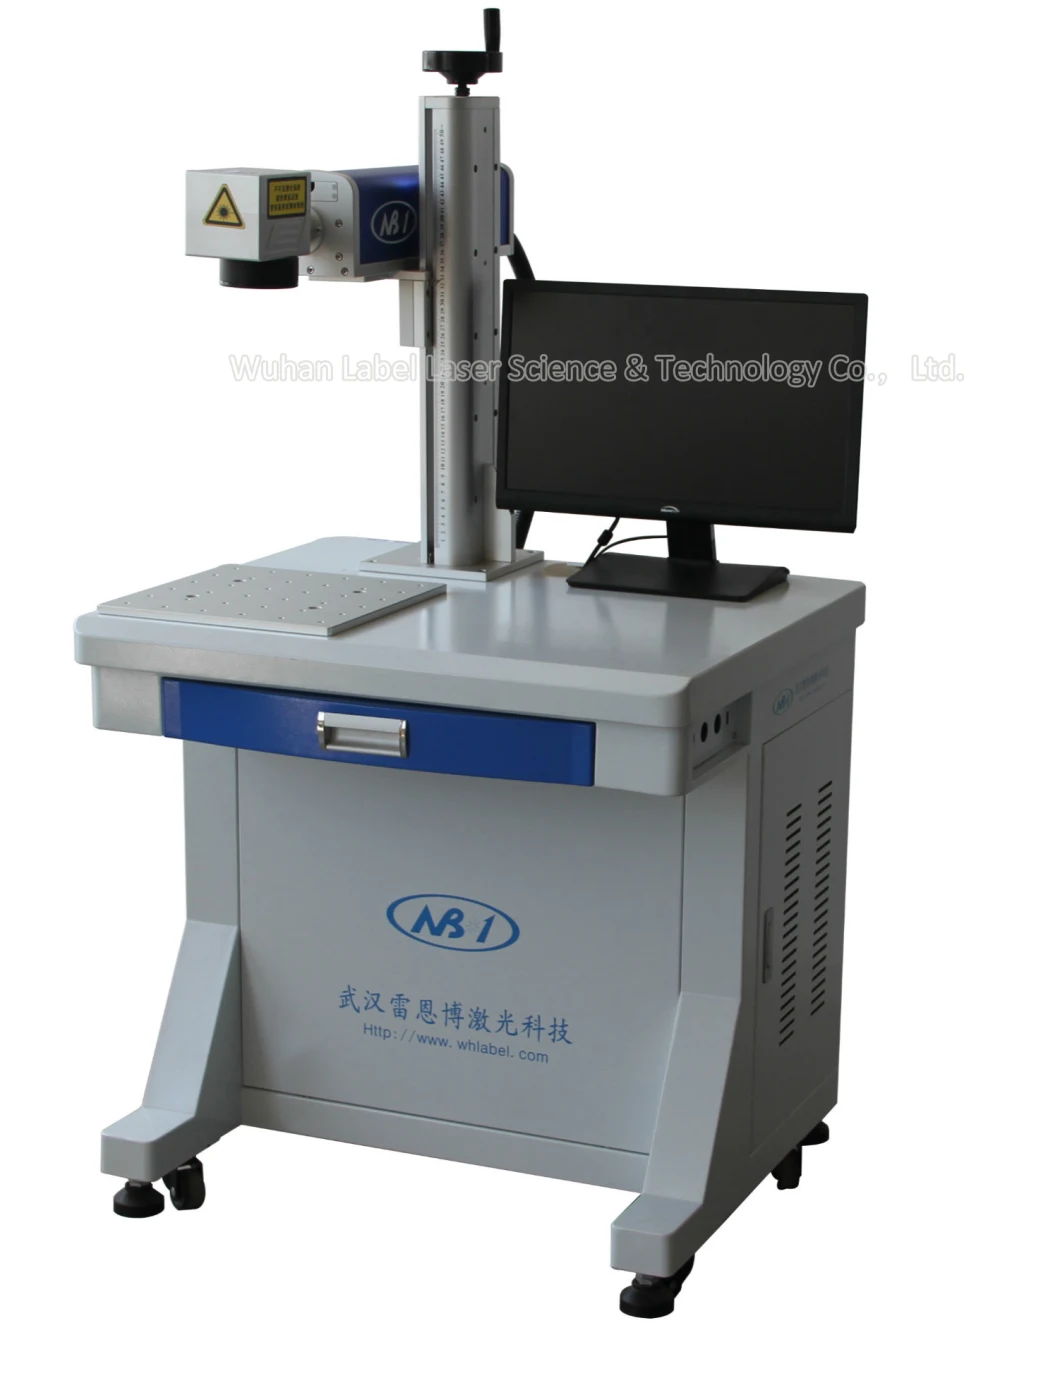 CO2 Laser Engraving Printing Marking Machine